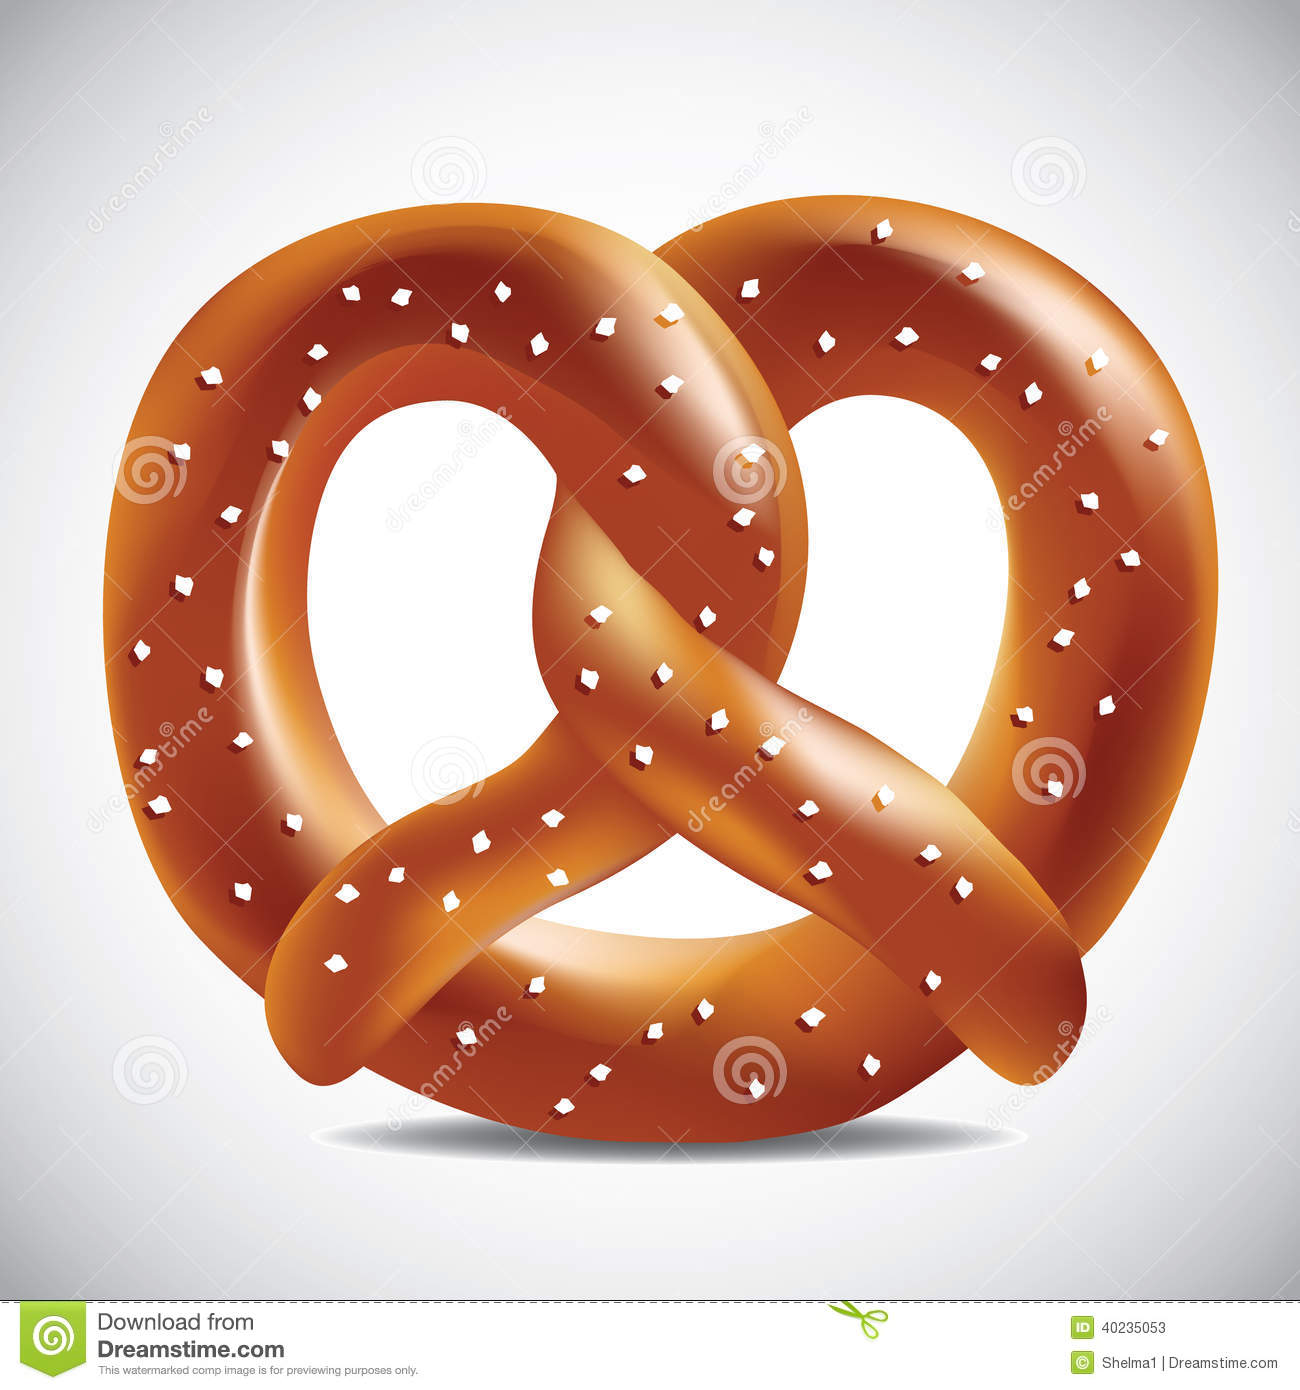 Oktoberfest party clipart elements u0026middot; Soft pretzel on a white background Stock Photos